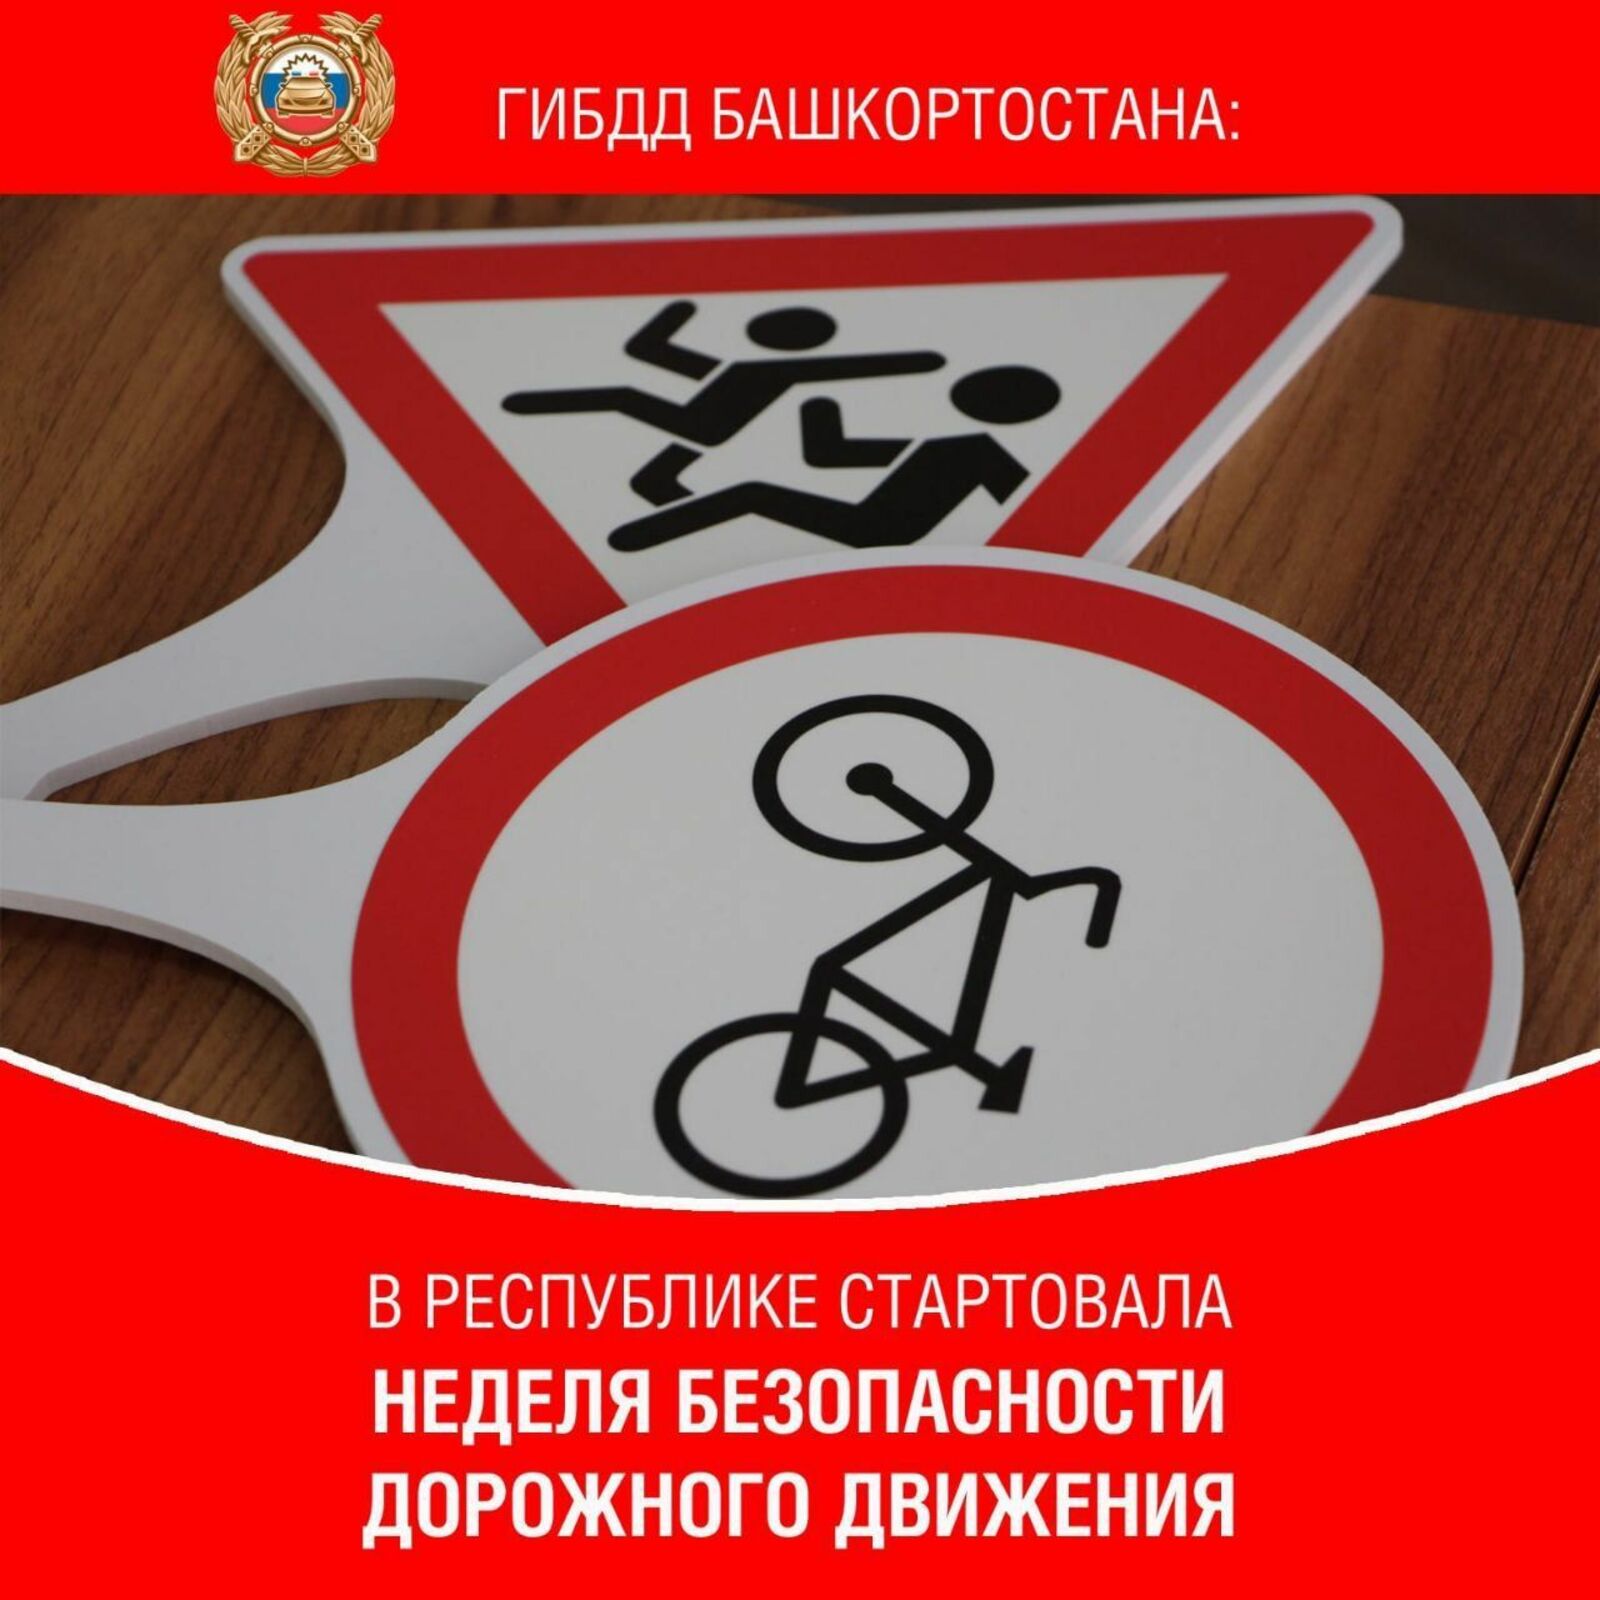 Республика Башкортостан принимает участие во Всероссийской неделе безопасности дорожного движения.